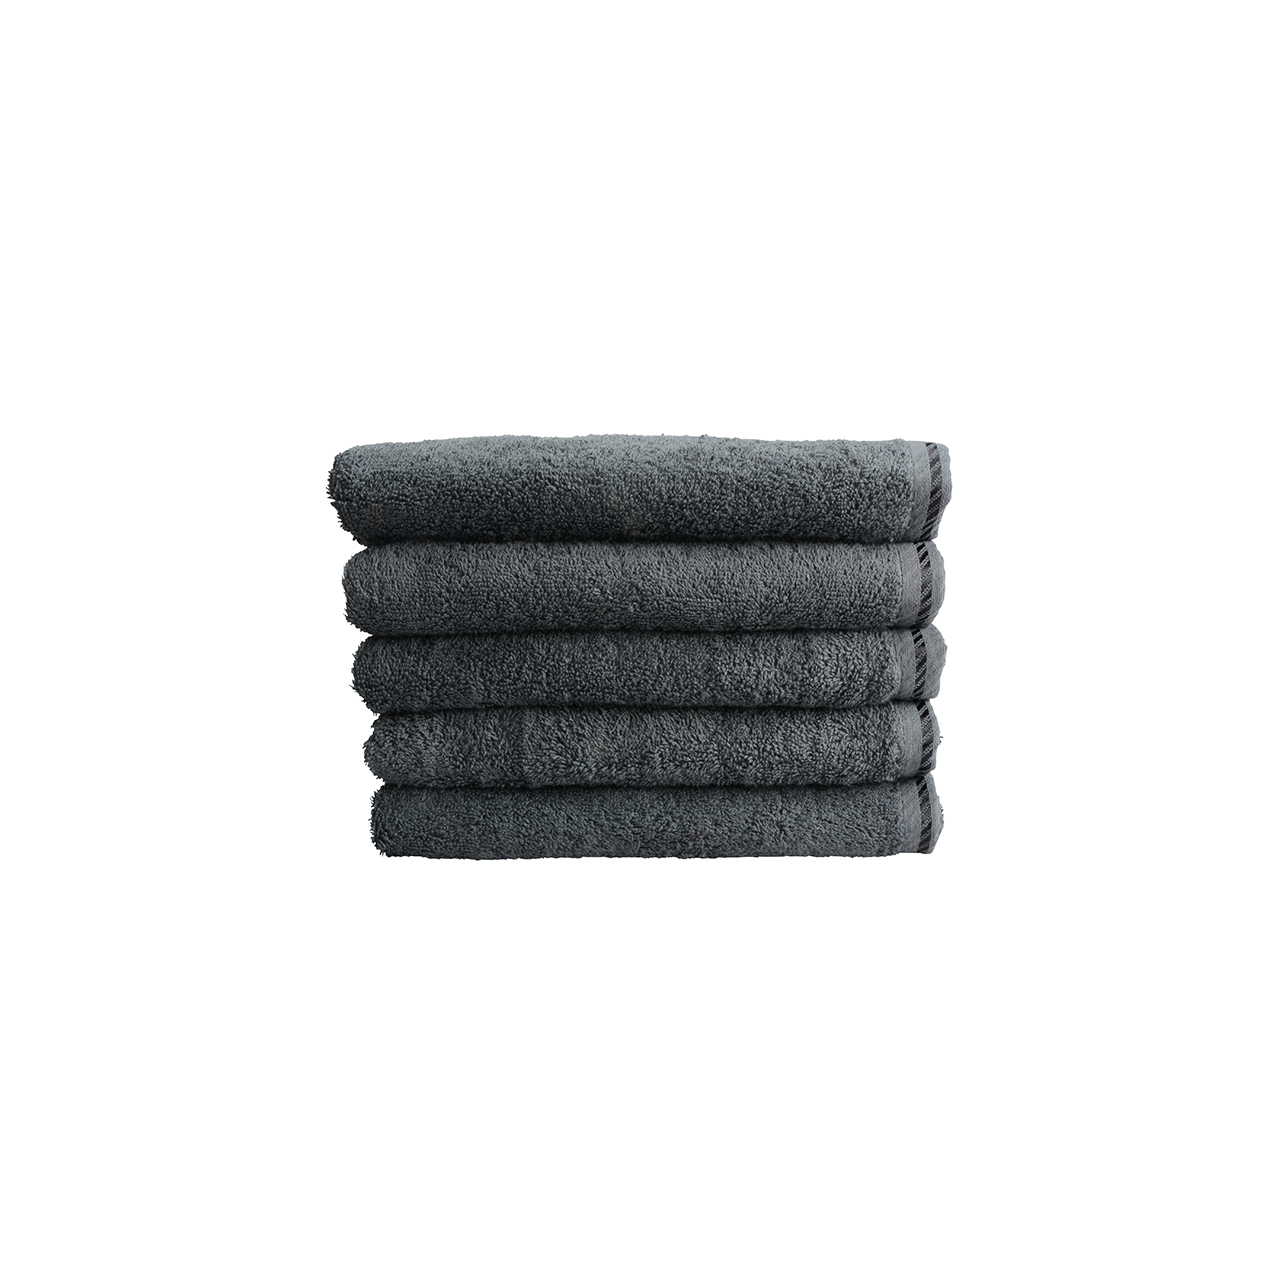 Premium towel 500 g/m² 50 x 100 cm A